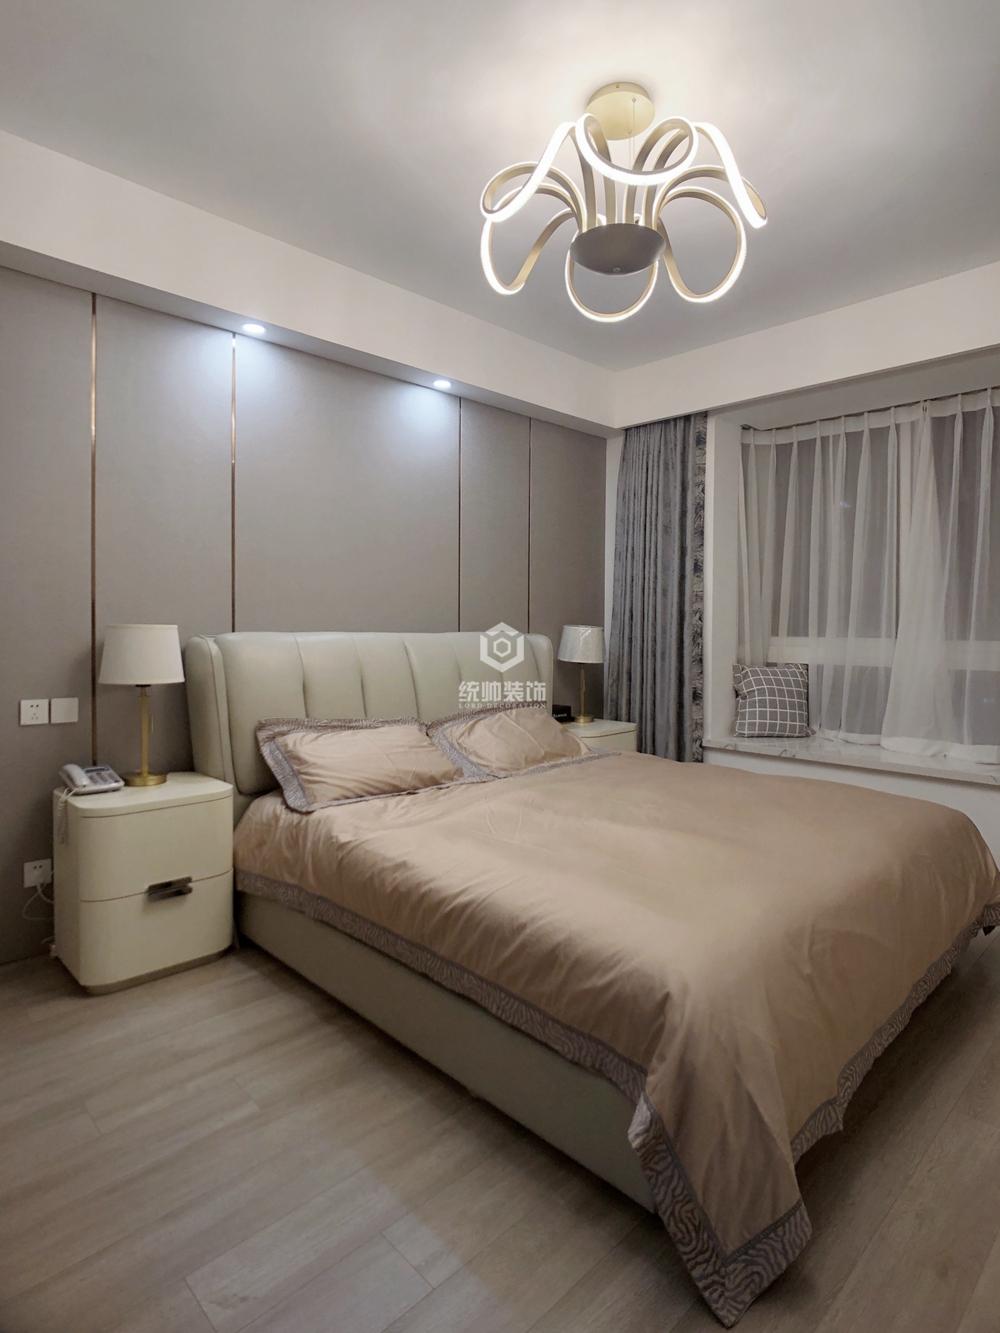 杨浦区中星凉城苑108平方轻奢风格两室两厅卧室装修效果图